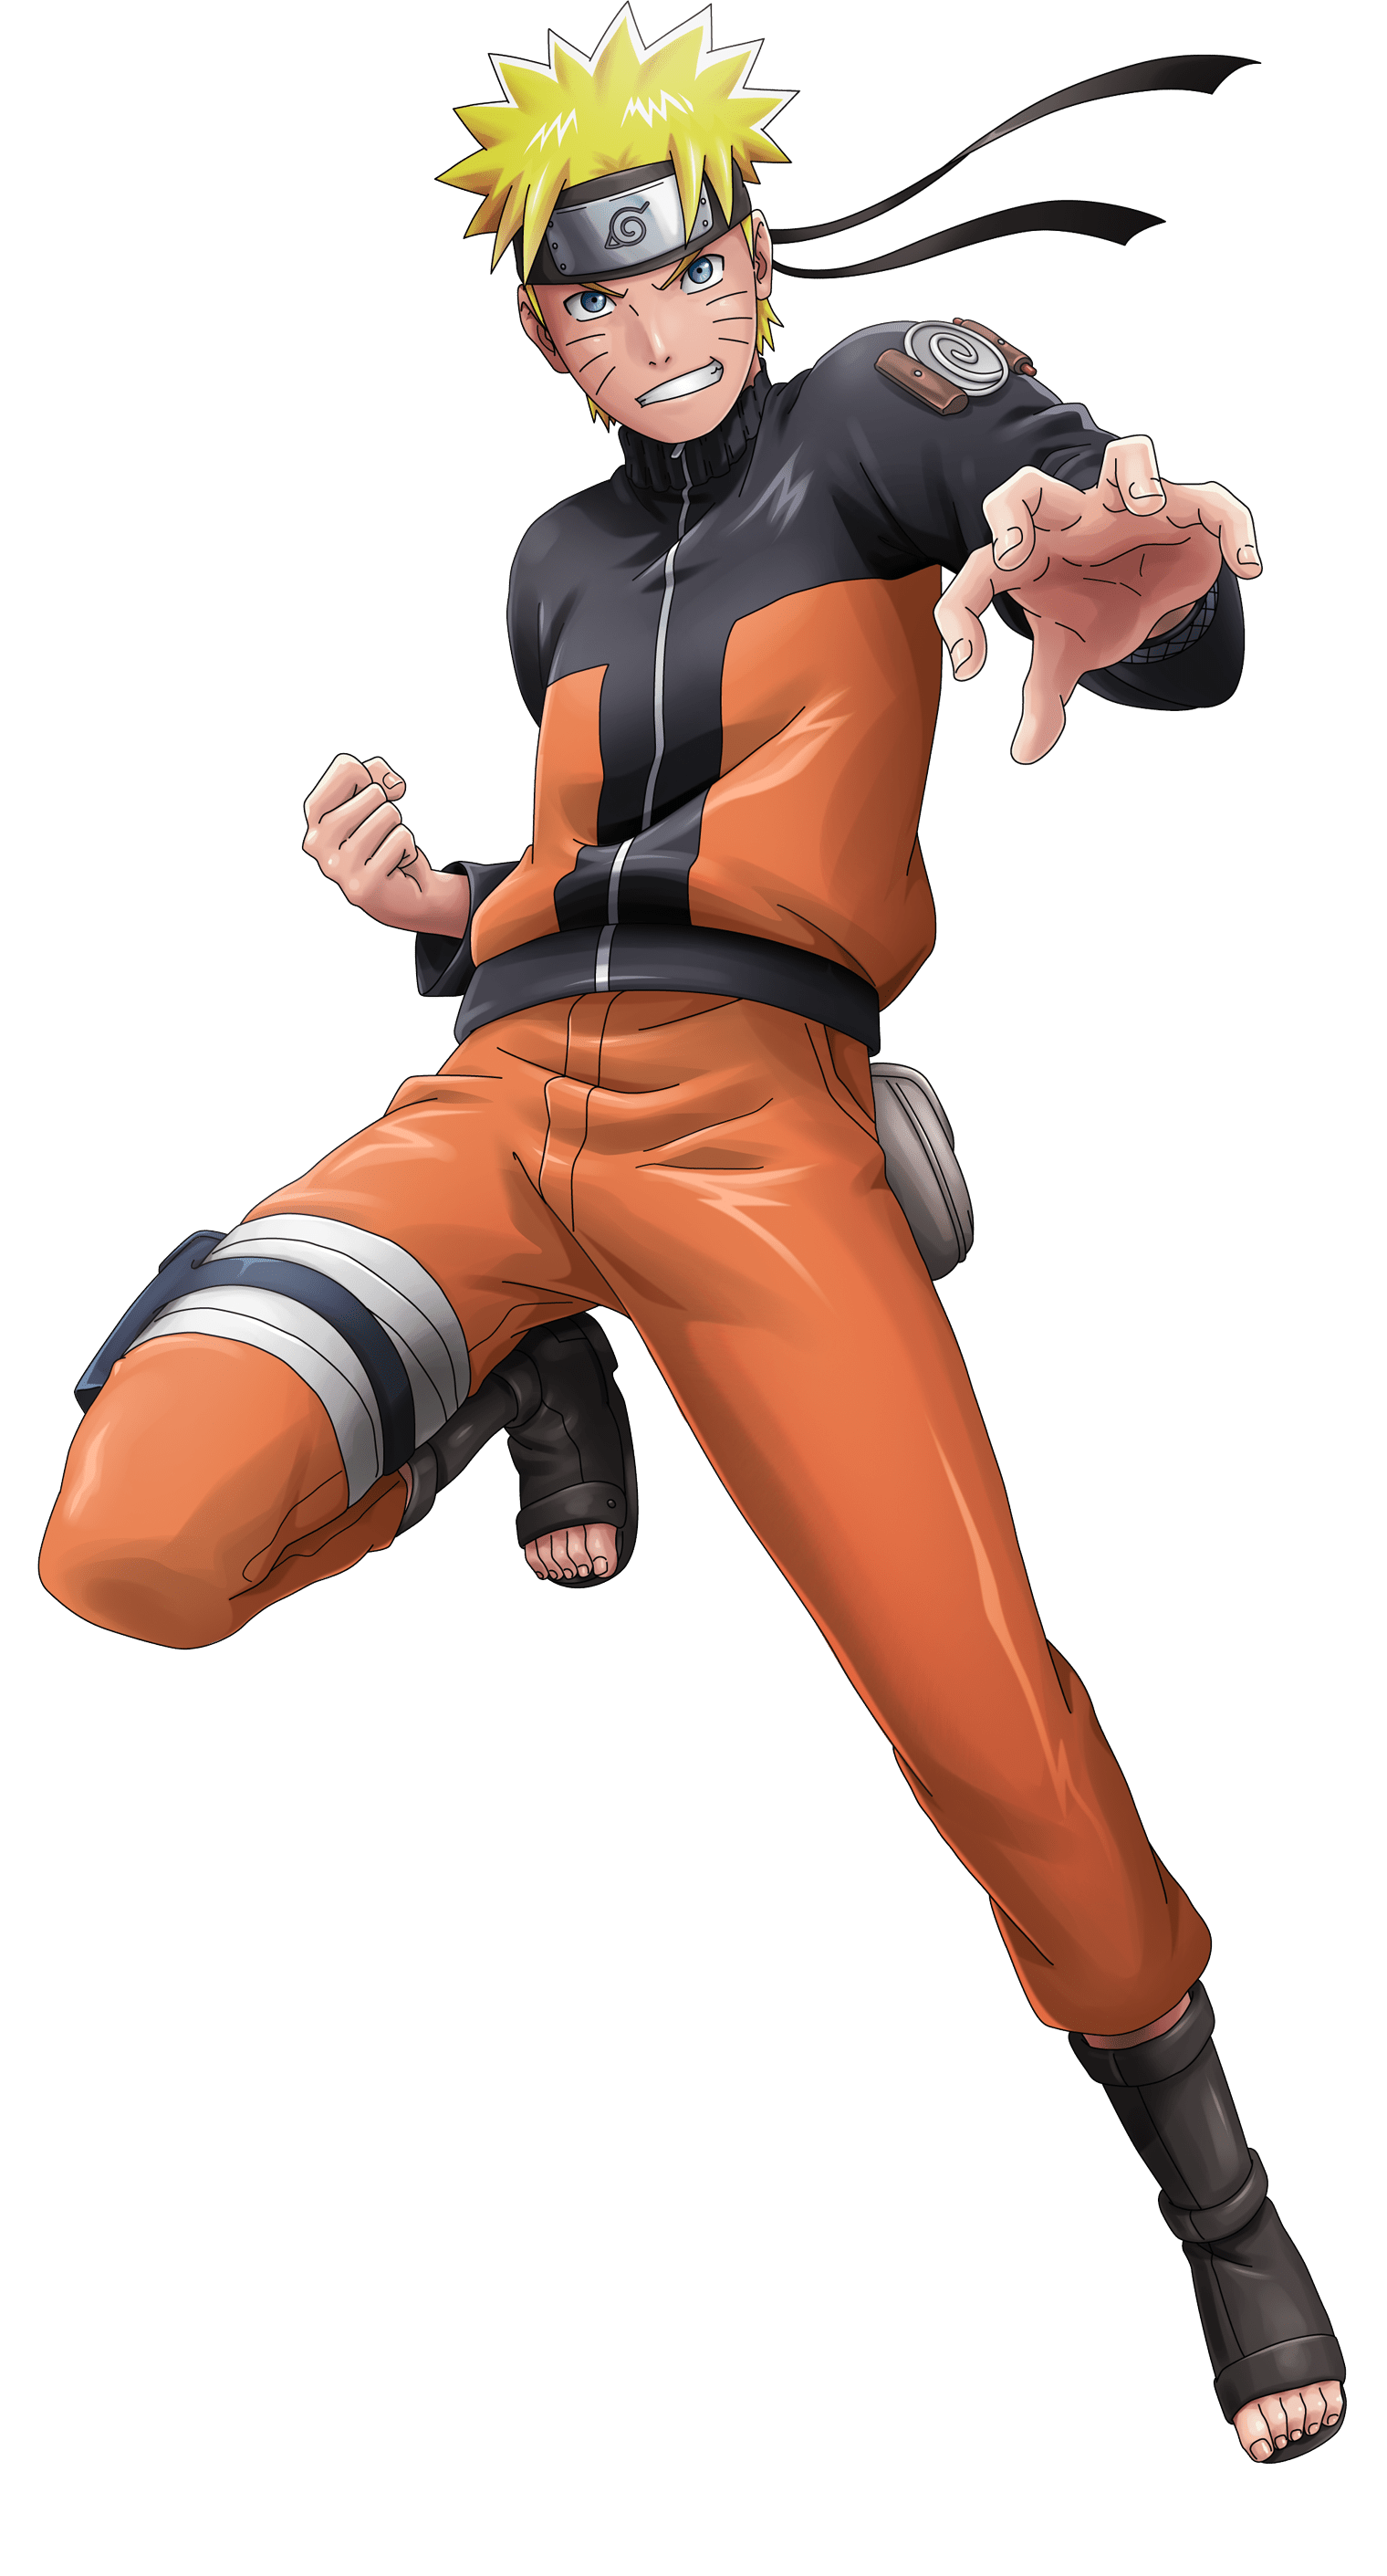 Especulando o tamanho do pé de cada personagem - Naruto Uzumaki - Naruto  Shippuden No shippuden uns 39/40 /Monza (Podem mandar sugestões) (y)